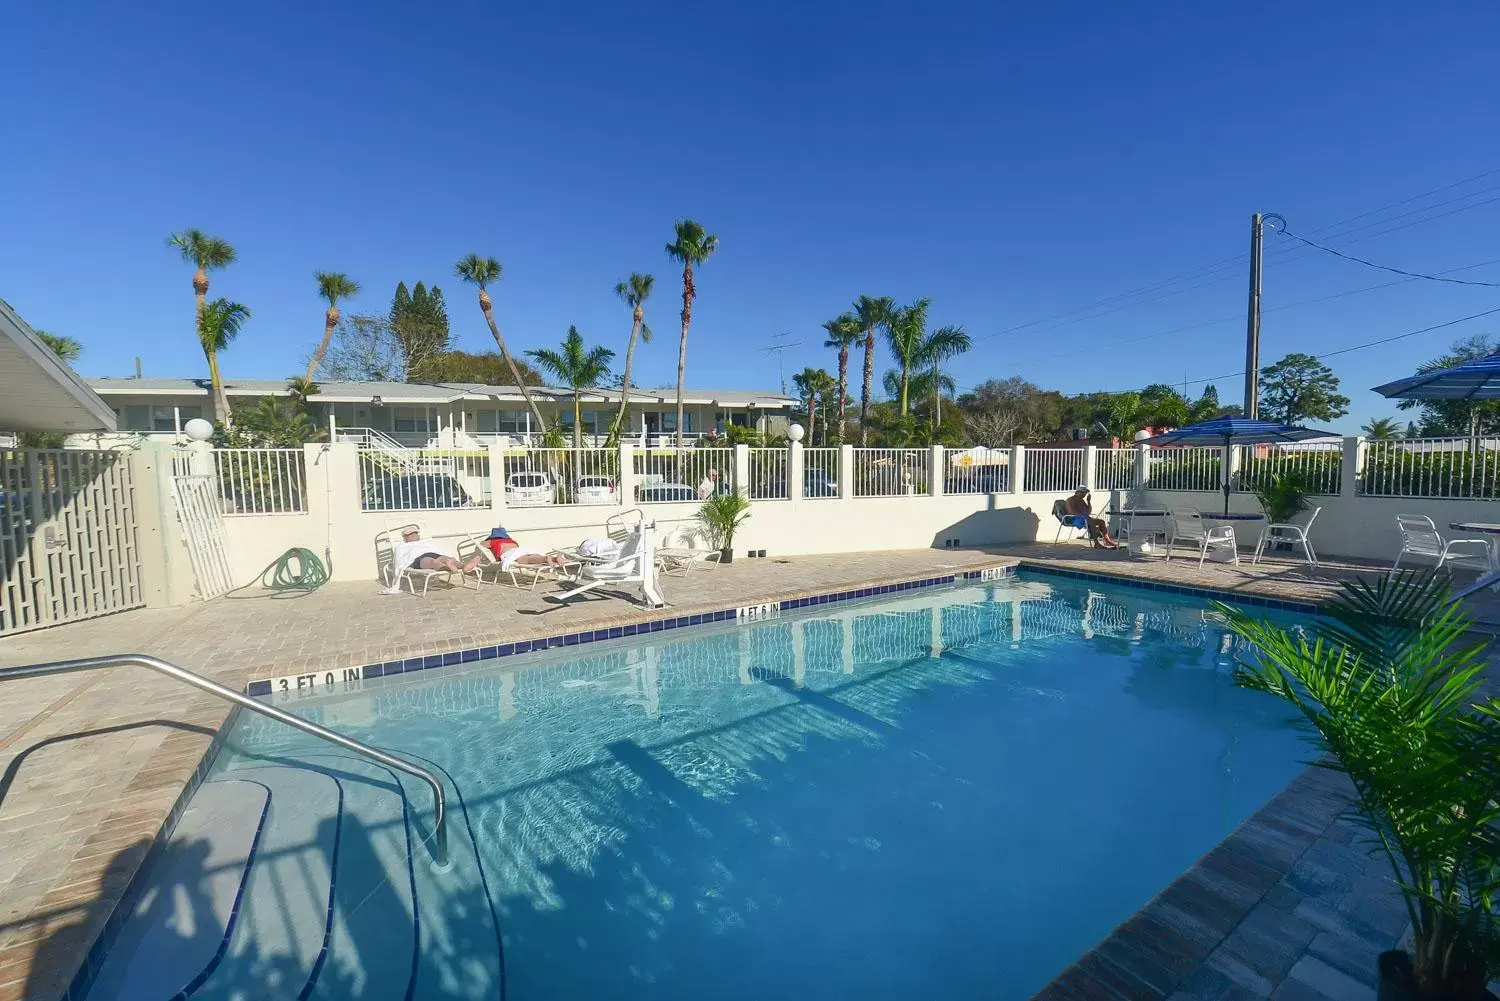 Property building, Swimming Pool in Regency Inn & Suites Sarasota